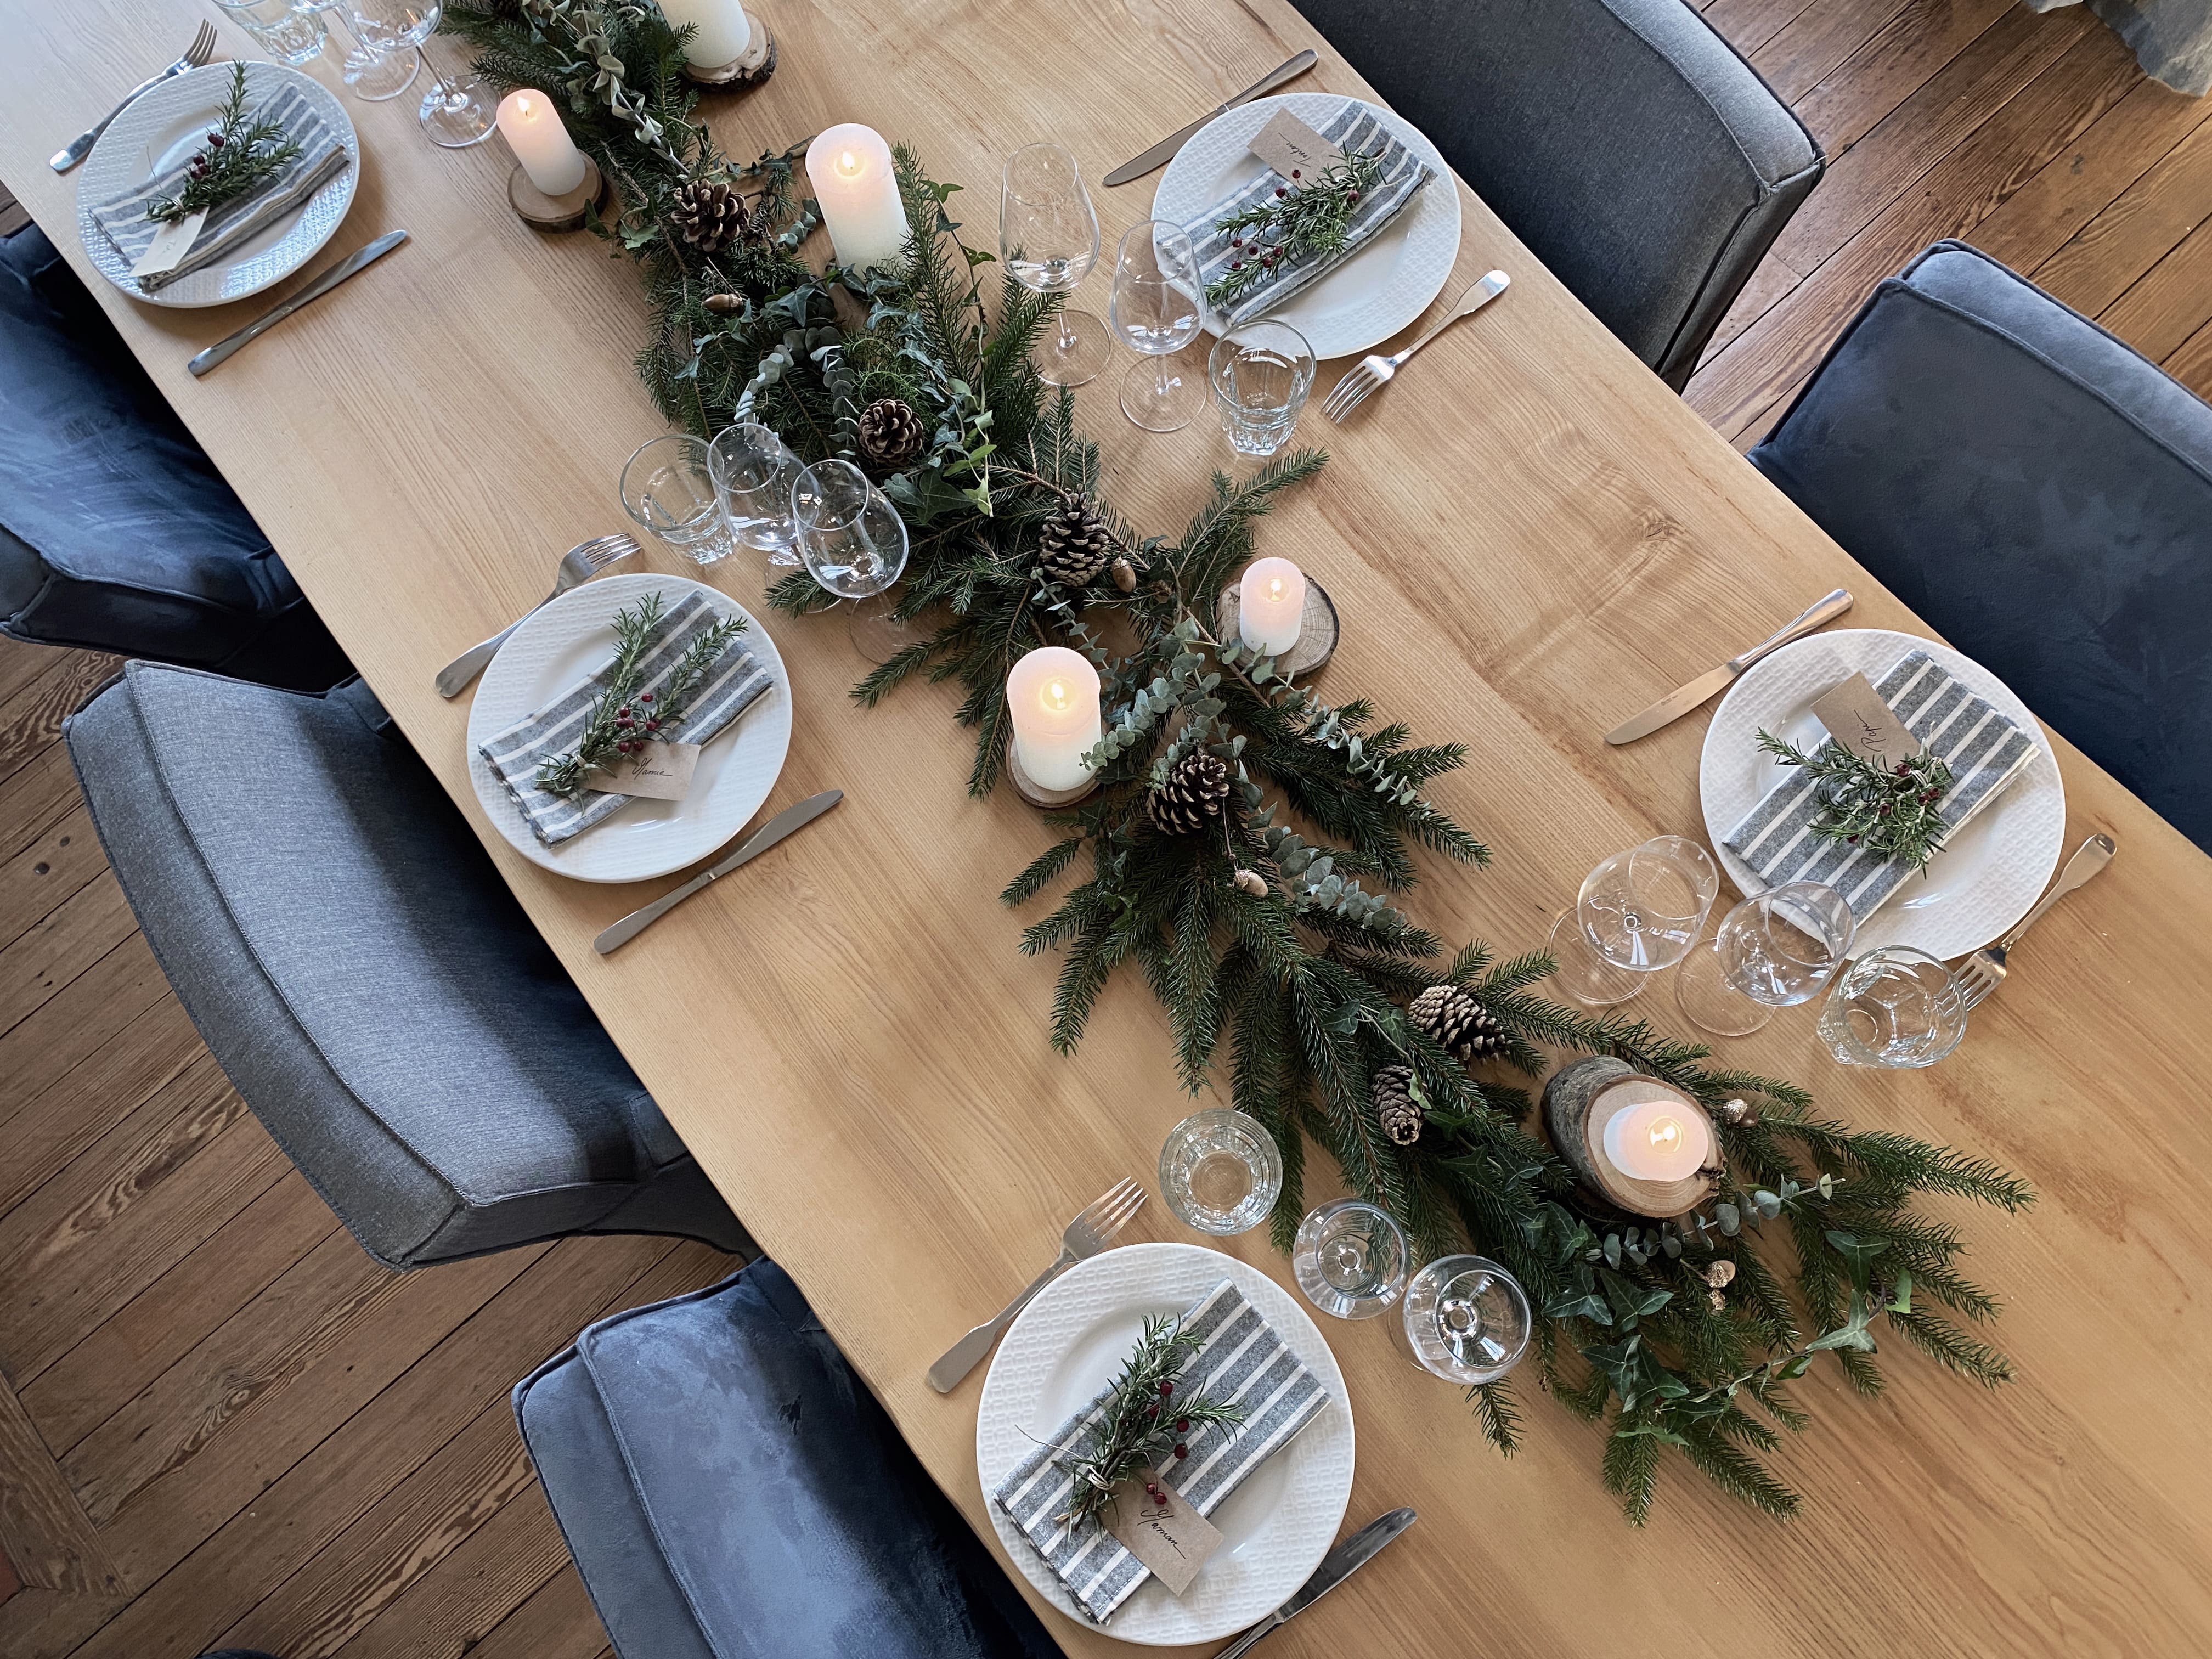 Comment dresser une belle table pour le réveillon de Noël ?